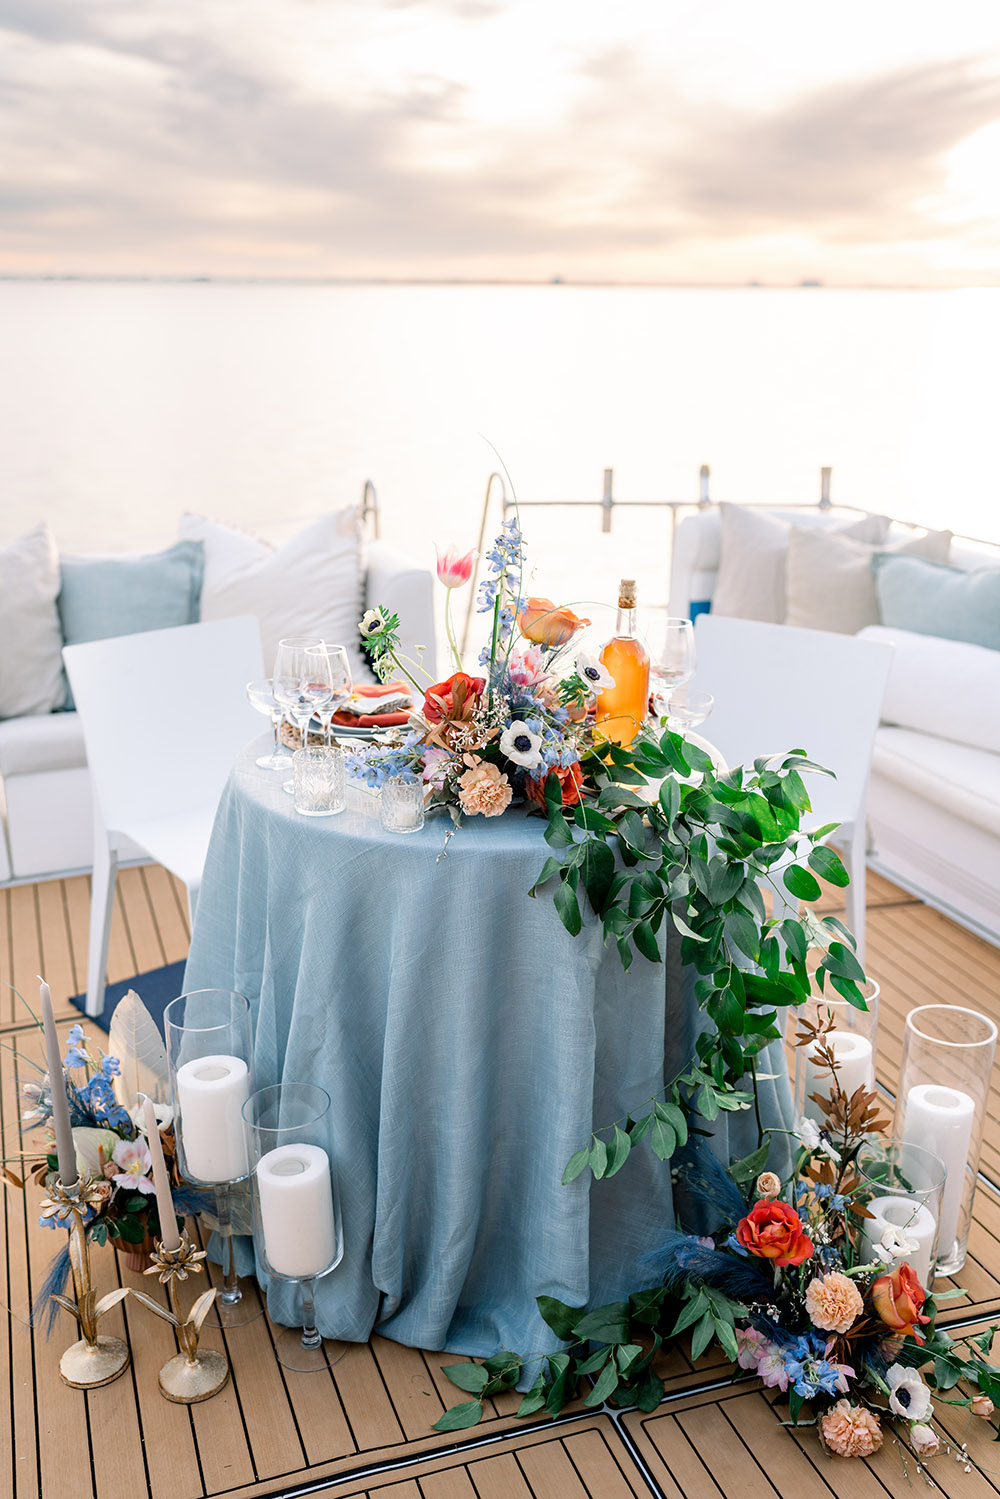 wedding sweetheart table